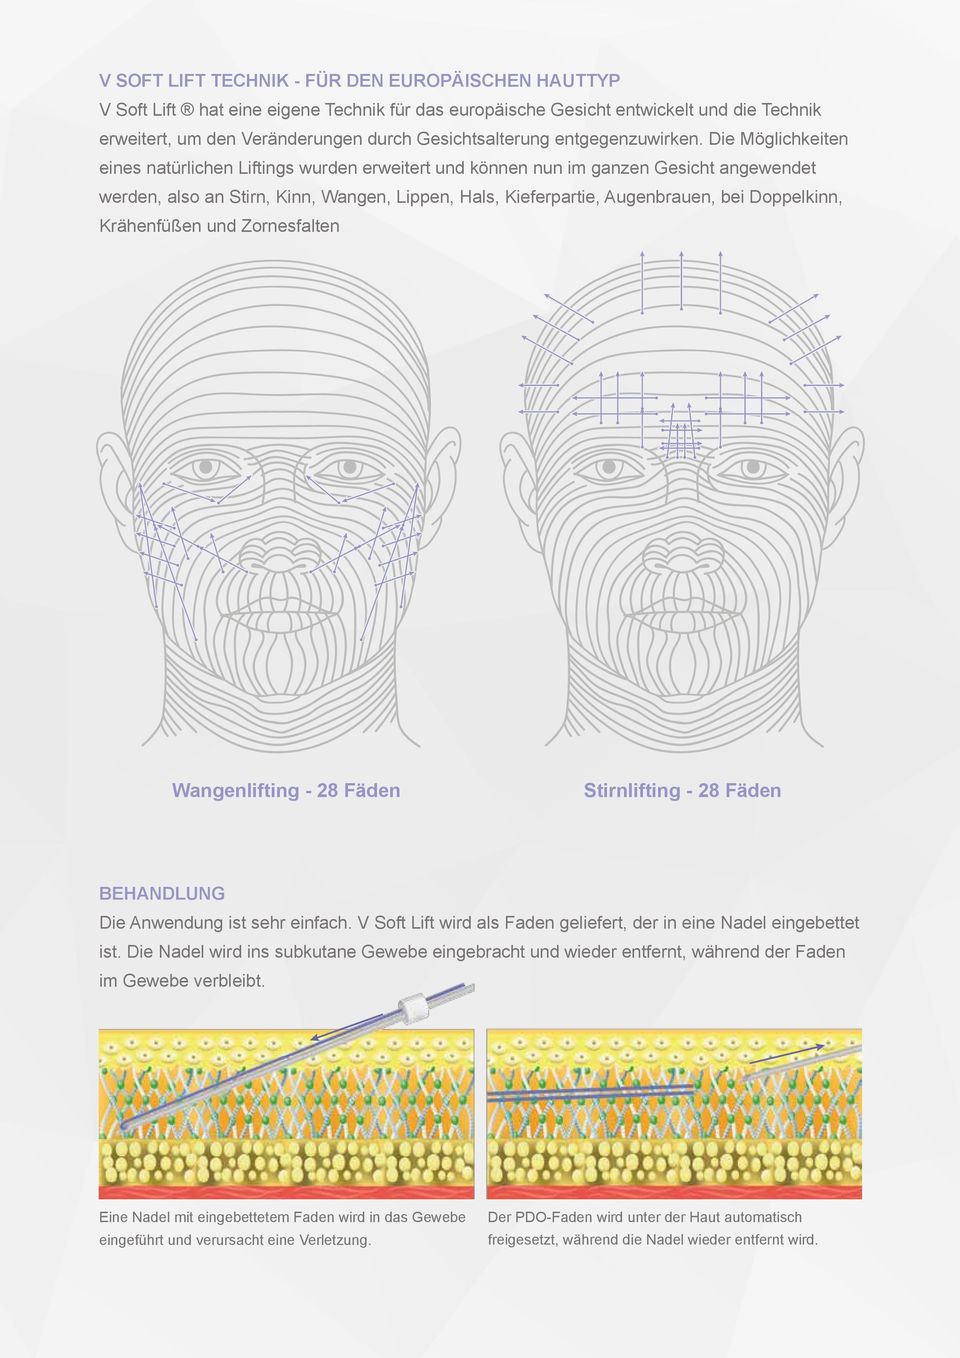 Die Möglichkeiten eines natürlichen Liftings wurden erweitert und können nun im ganzen Gesicht angewendet werden, also an Stirn, Kinn, Wangen, Lippen, Hals, Kieferpartie, Augenbrauen, bei Doppelkinn,